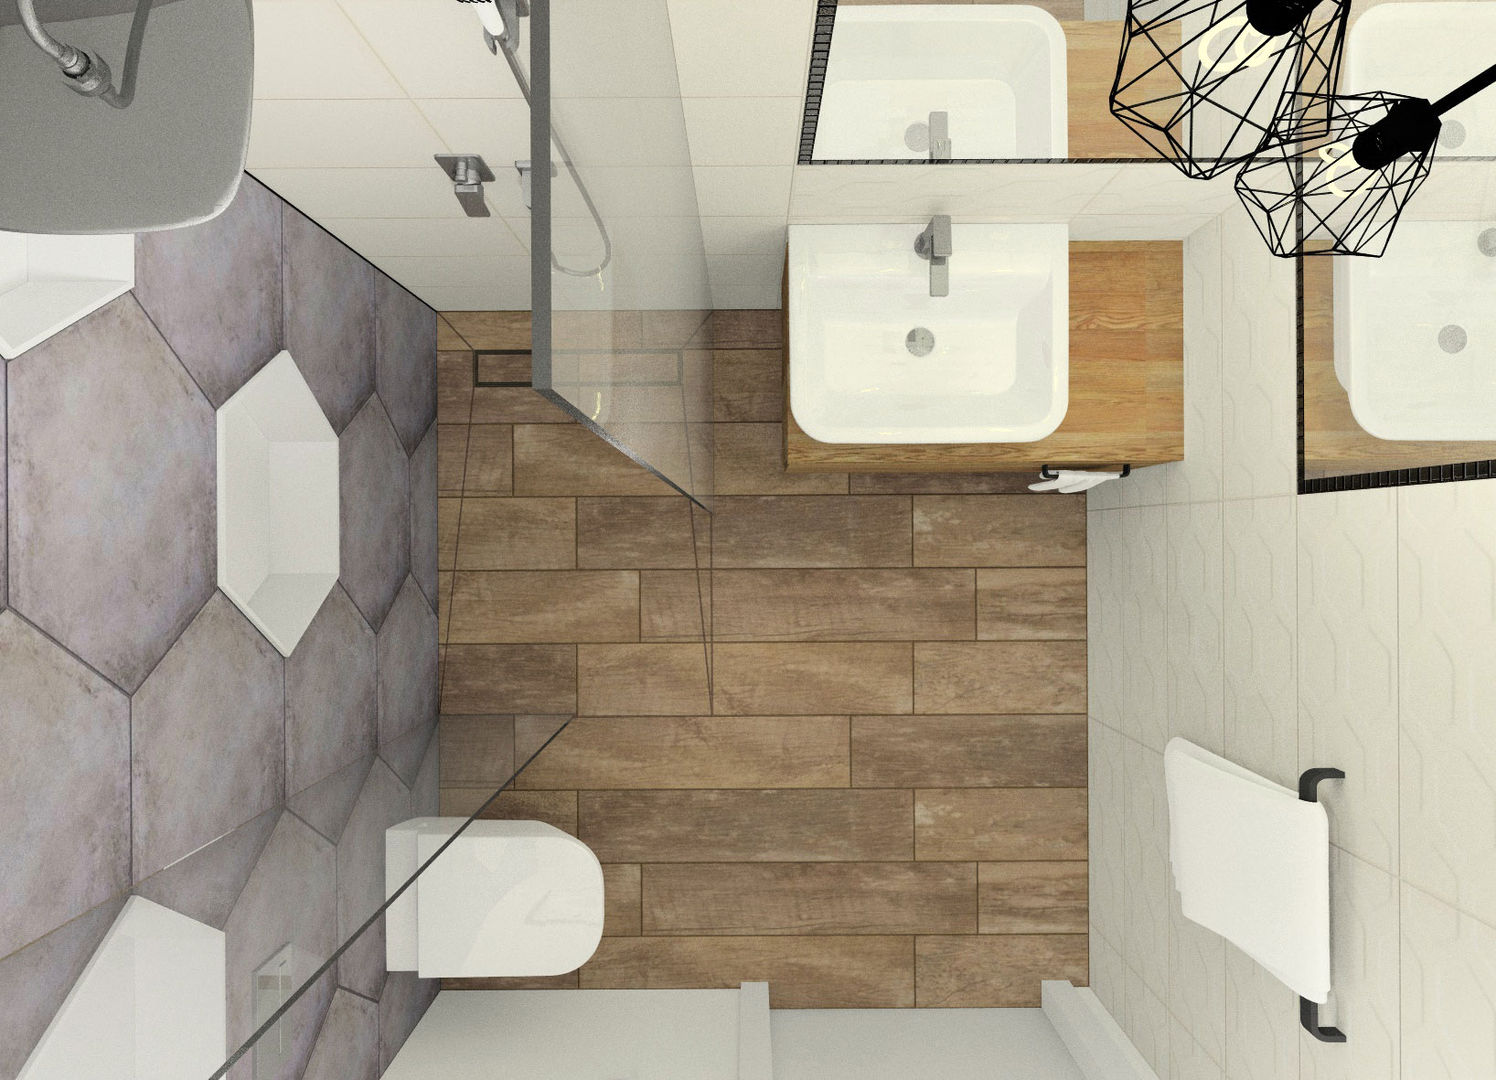 Mała łazienka w domu jednorodzinnym, Esteti Design Esteti Design Baños de estilo minimalista Azulejos